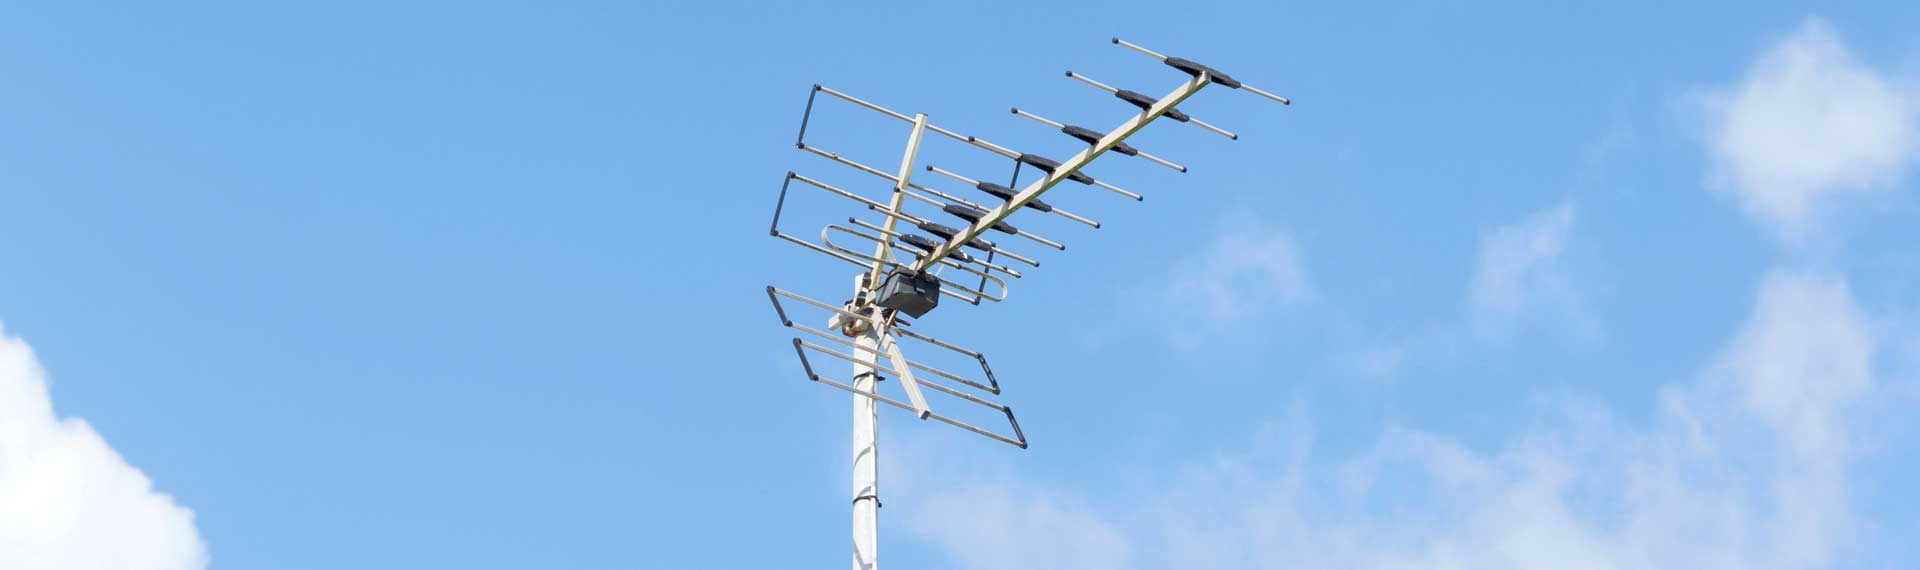 Antenne auf Dach